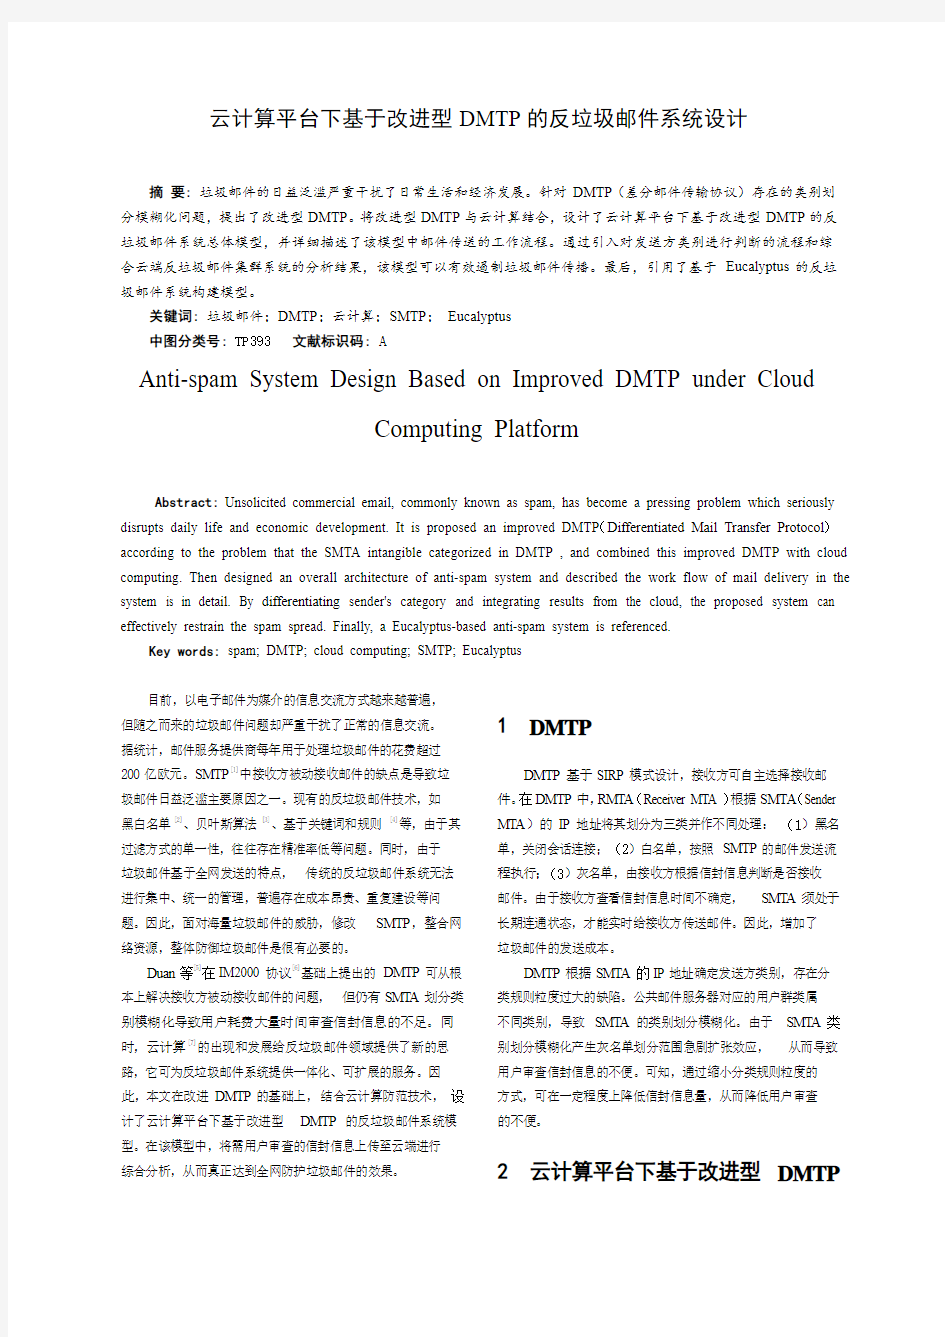 云计算平台下基于改进型DMTP的反垃圾邮件系统设计